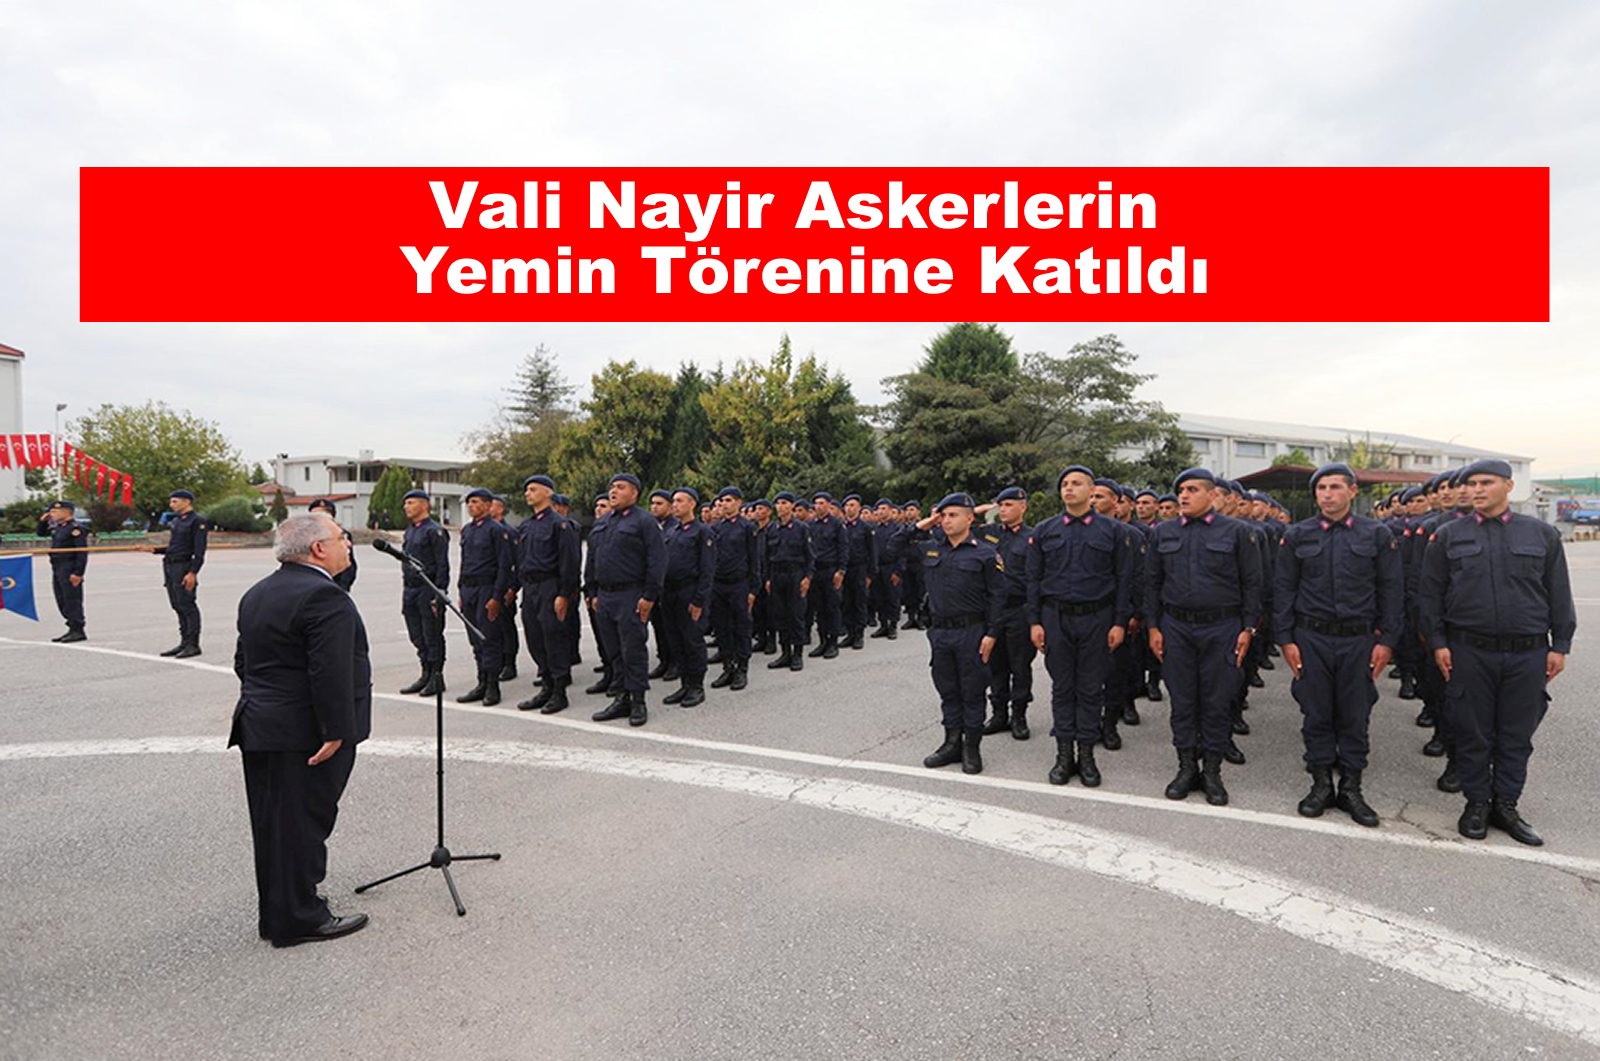 Vali Nayir Askerlerin Yemin Törenine Katıldı